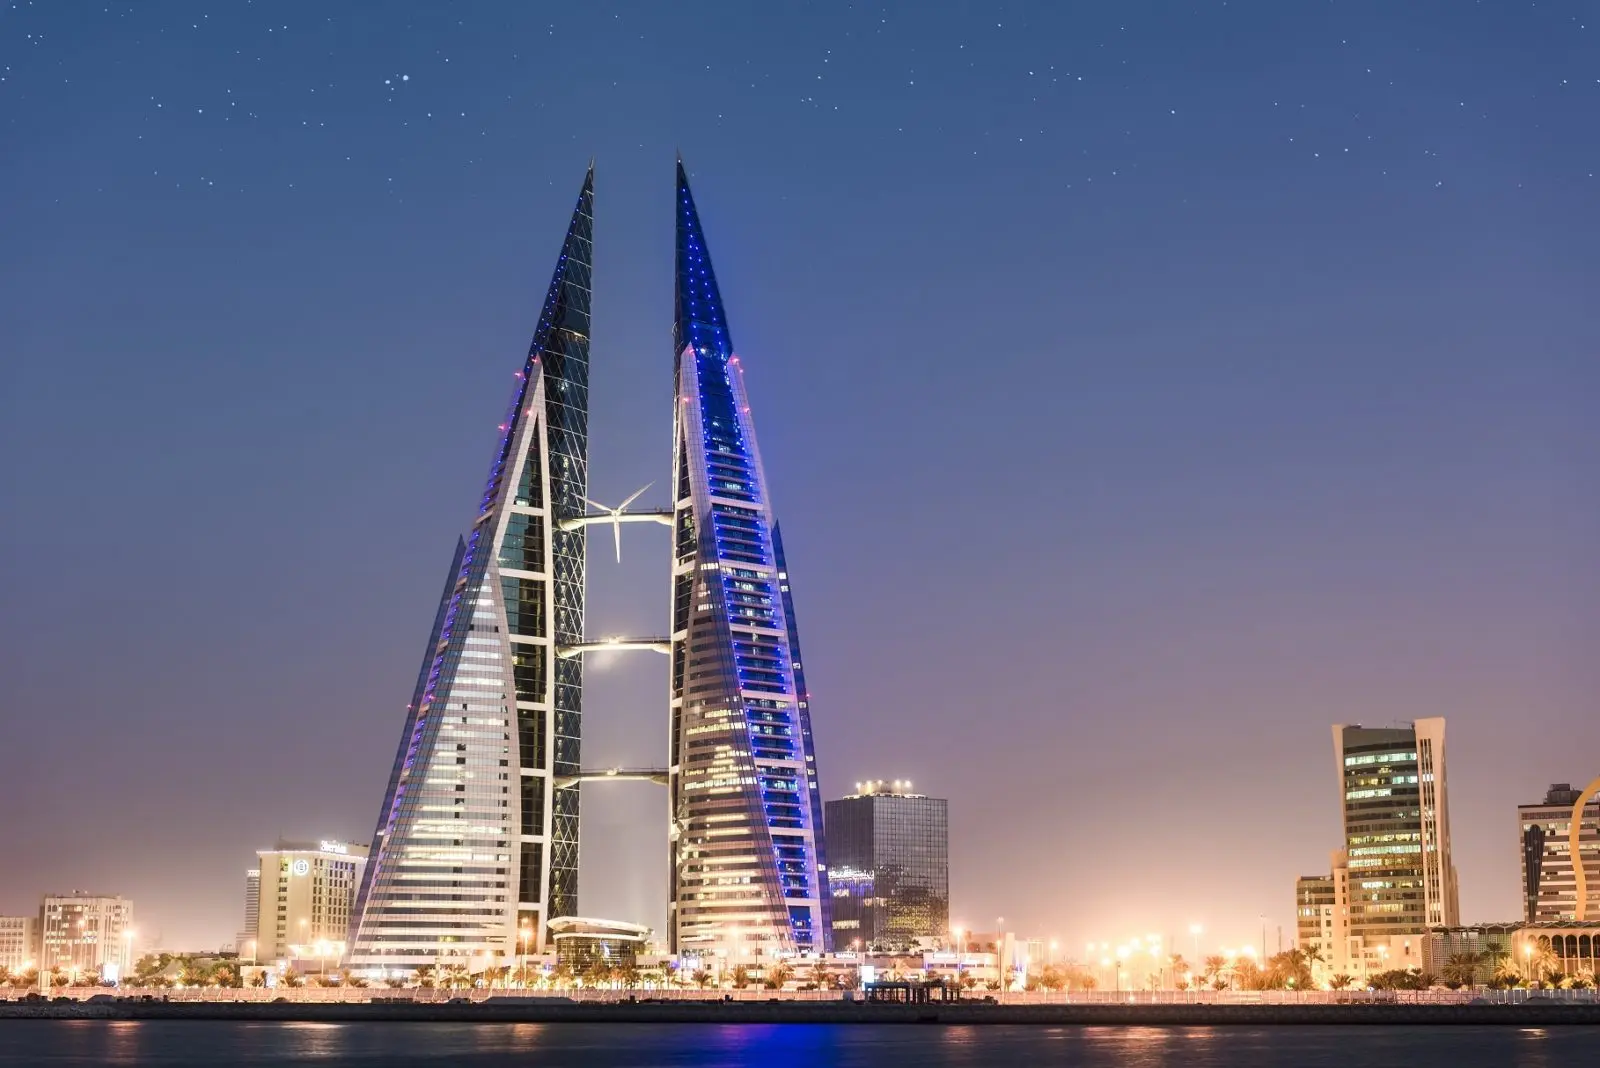 bahrain world trade center edificio inteligente - Cuánto mide el Bahrain World Trade Center